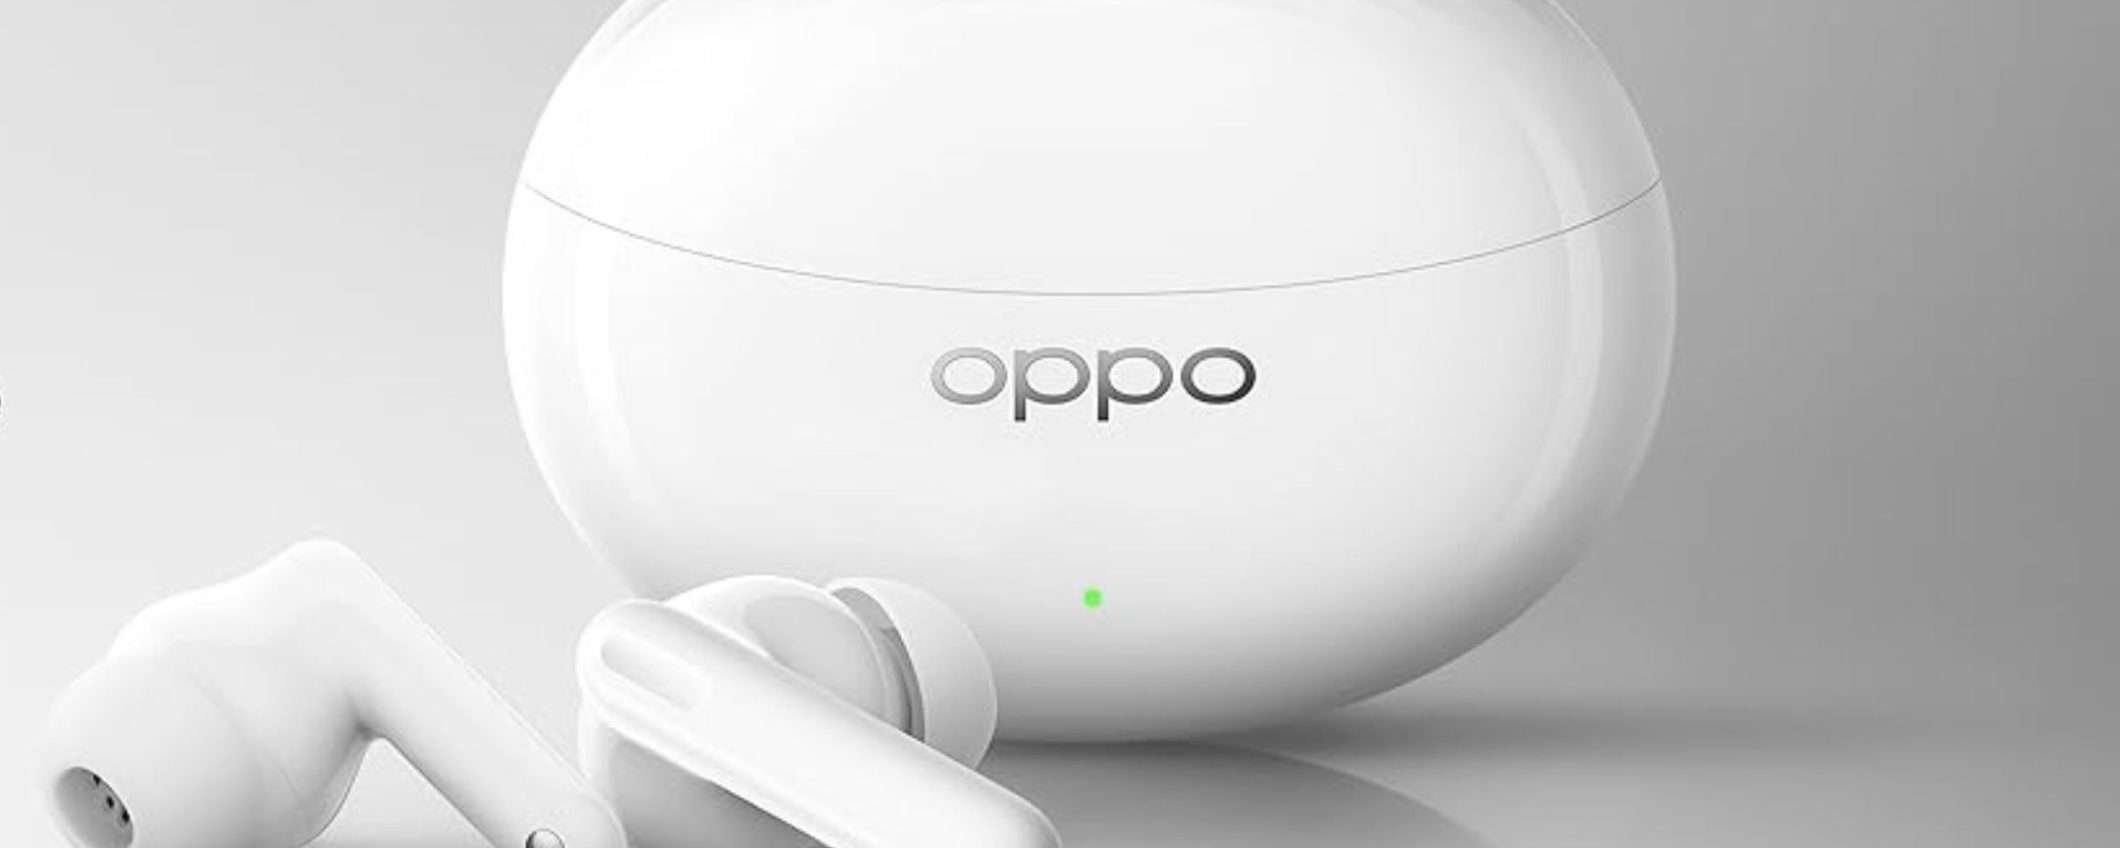 SOUND sempre POTENTE con le cuffie OPPO Enco Air3 Pro, oggi al 33% in meno